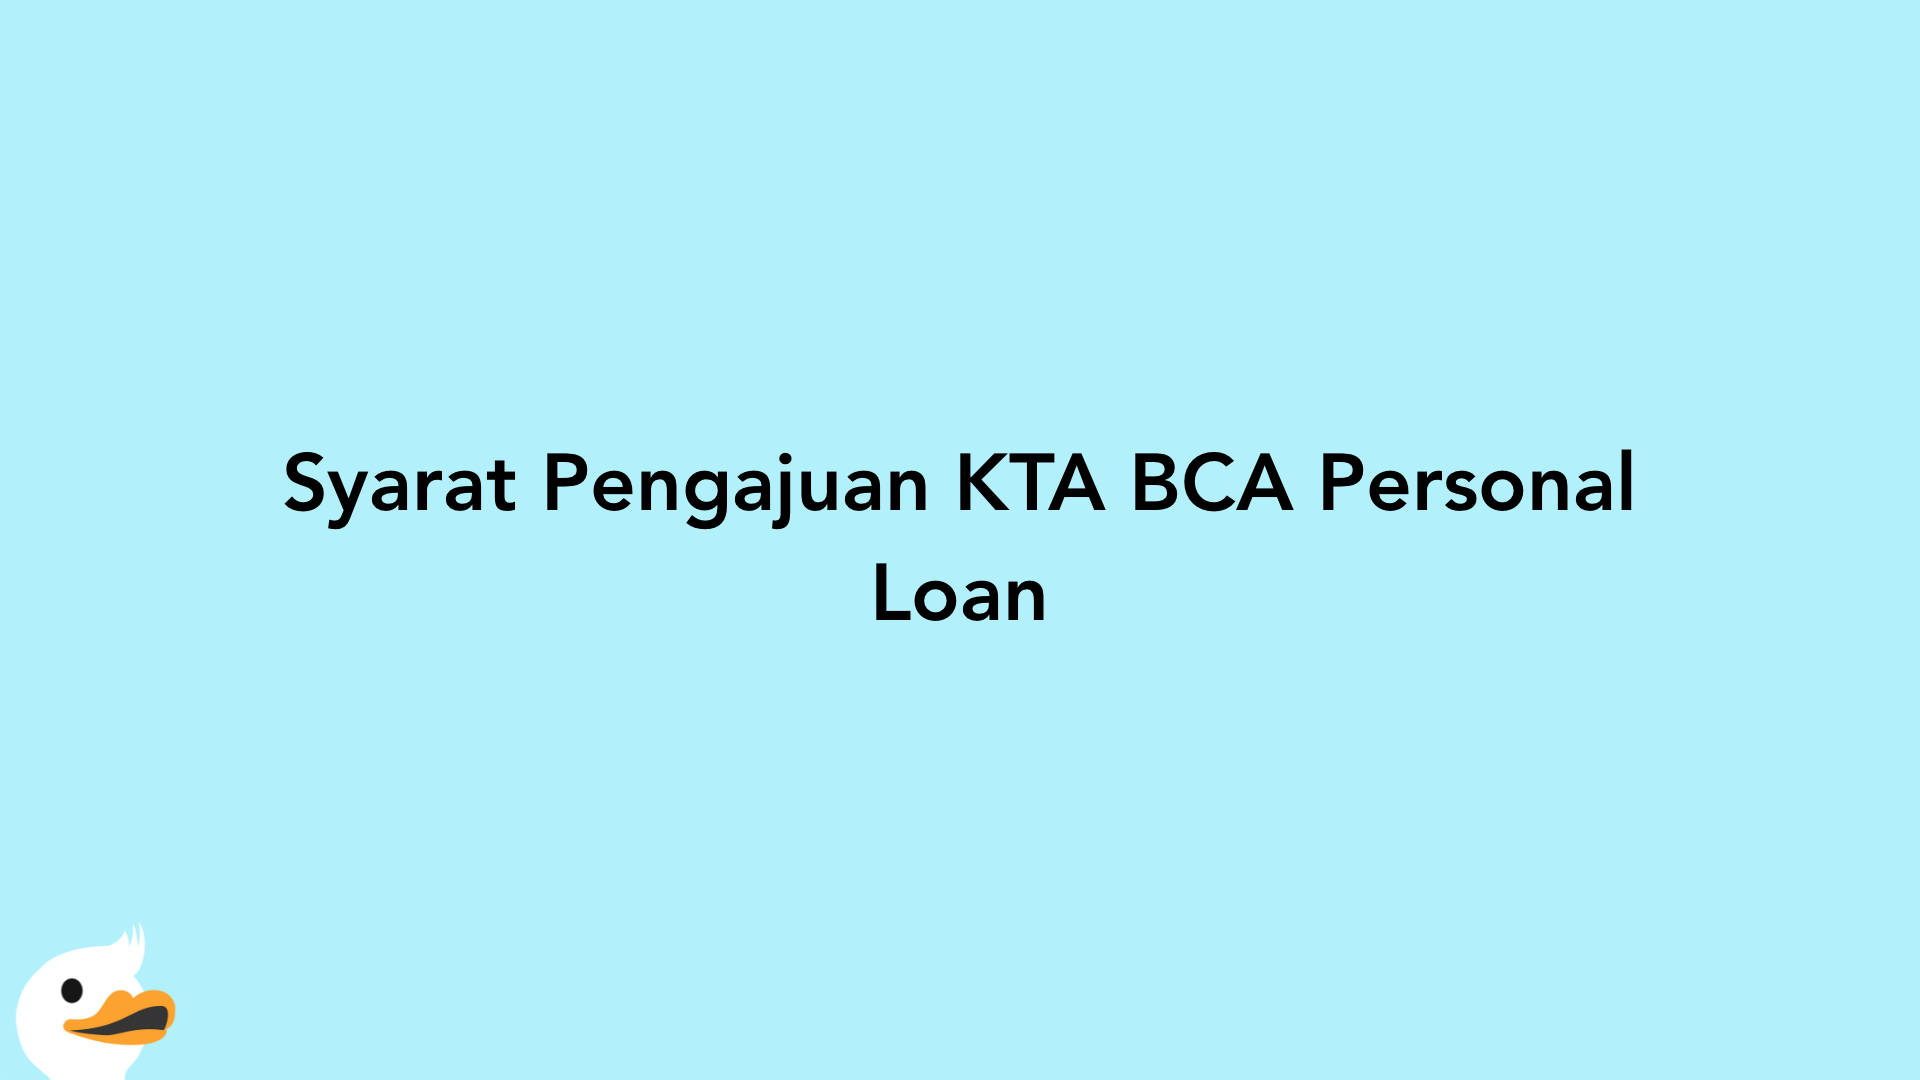 Syarat Pengajuan KTA BCA Personal Loan